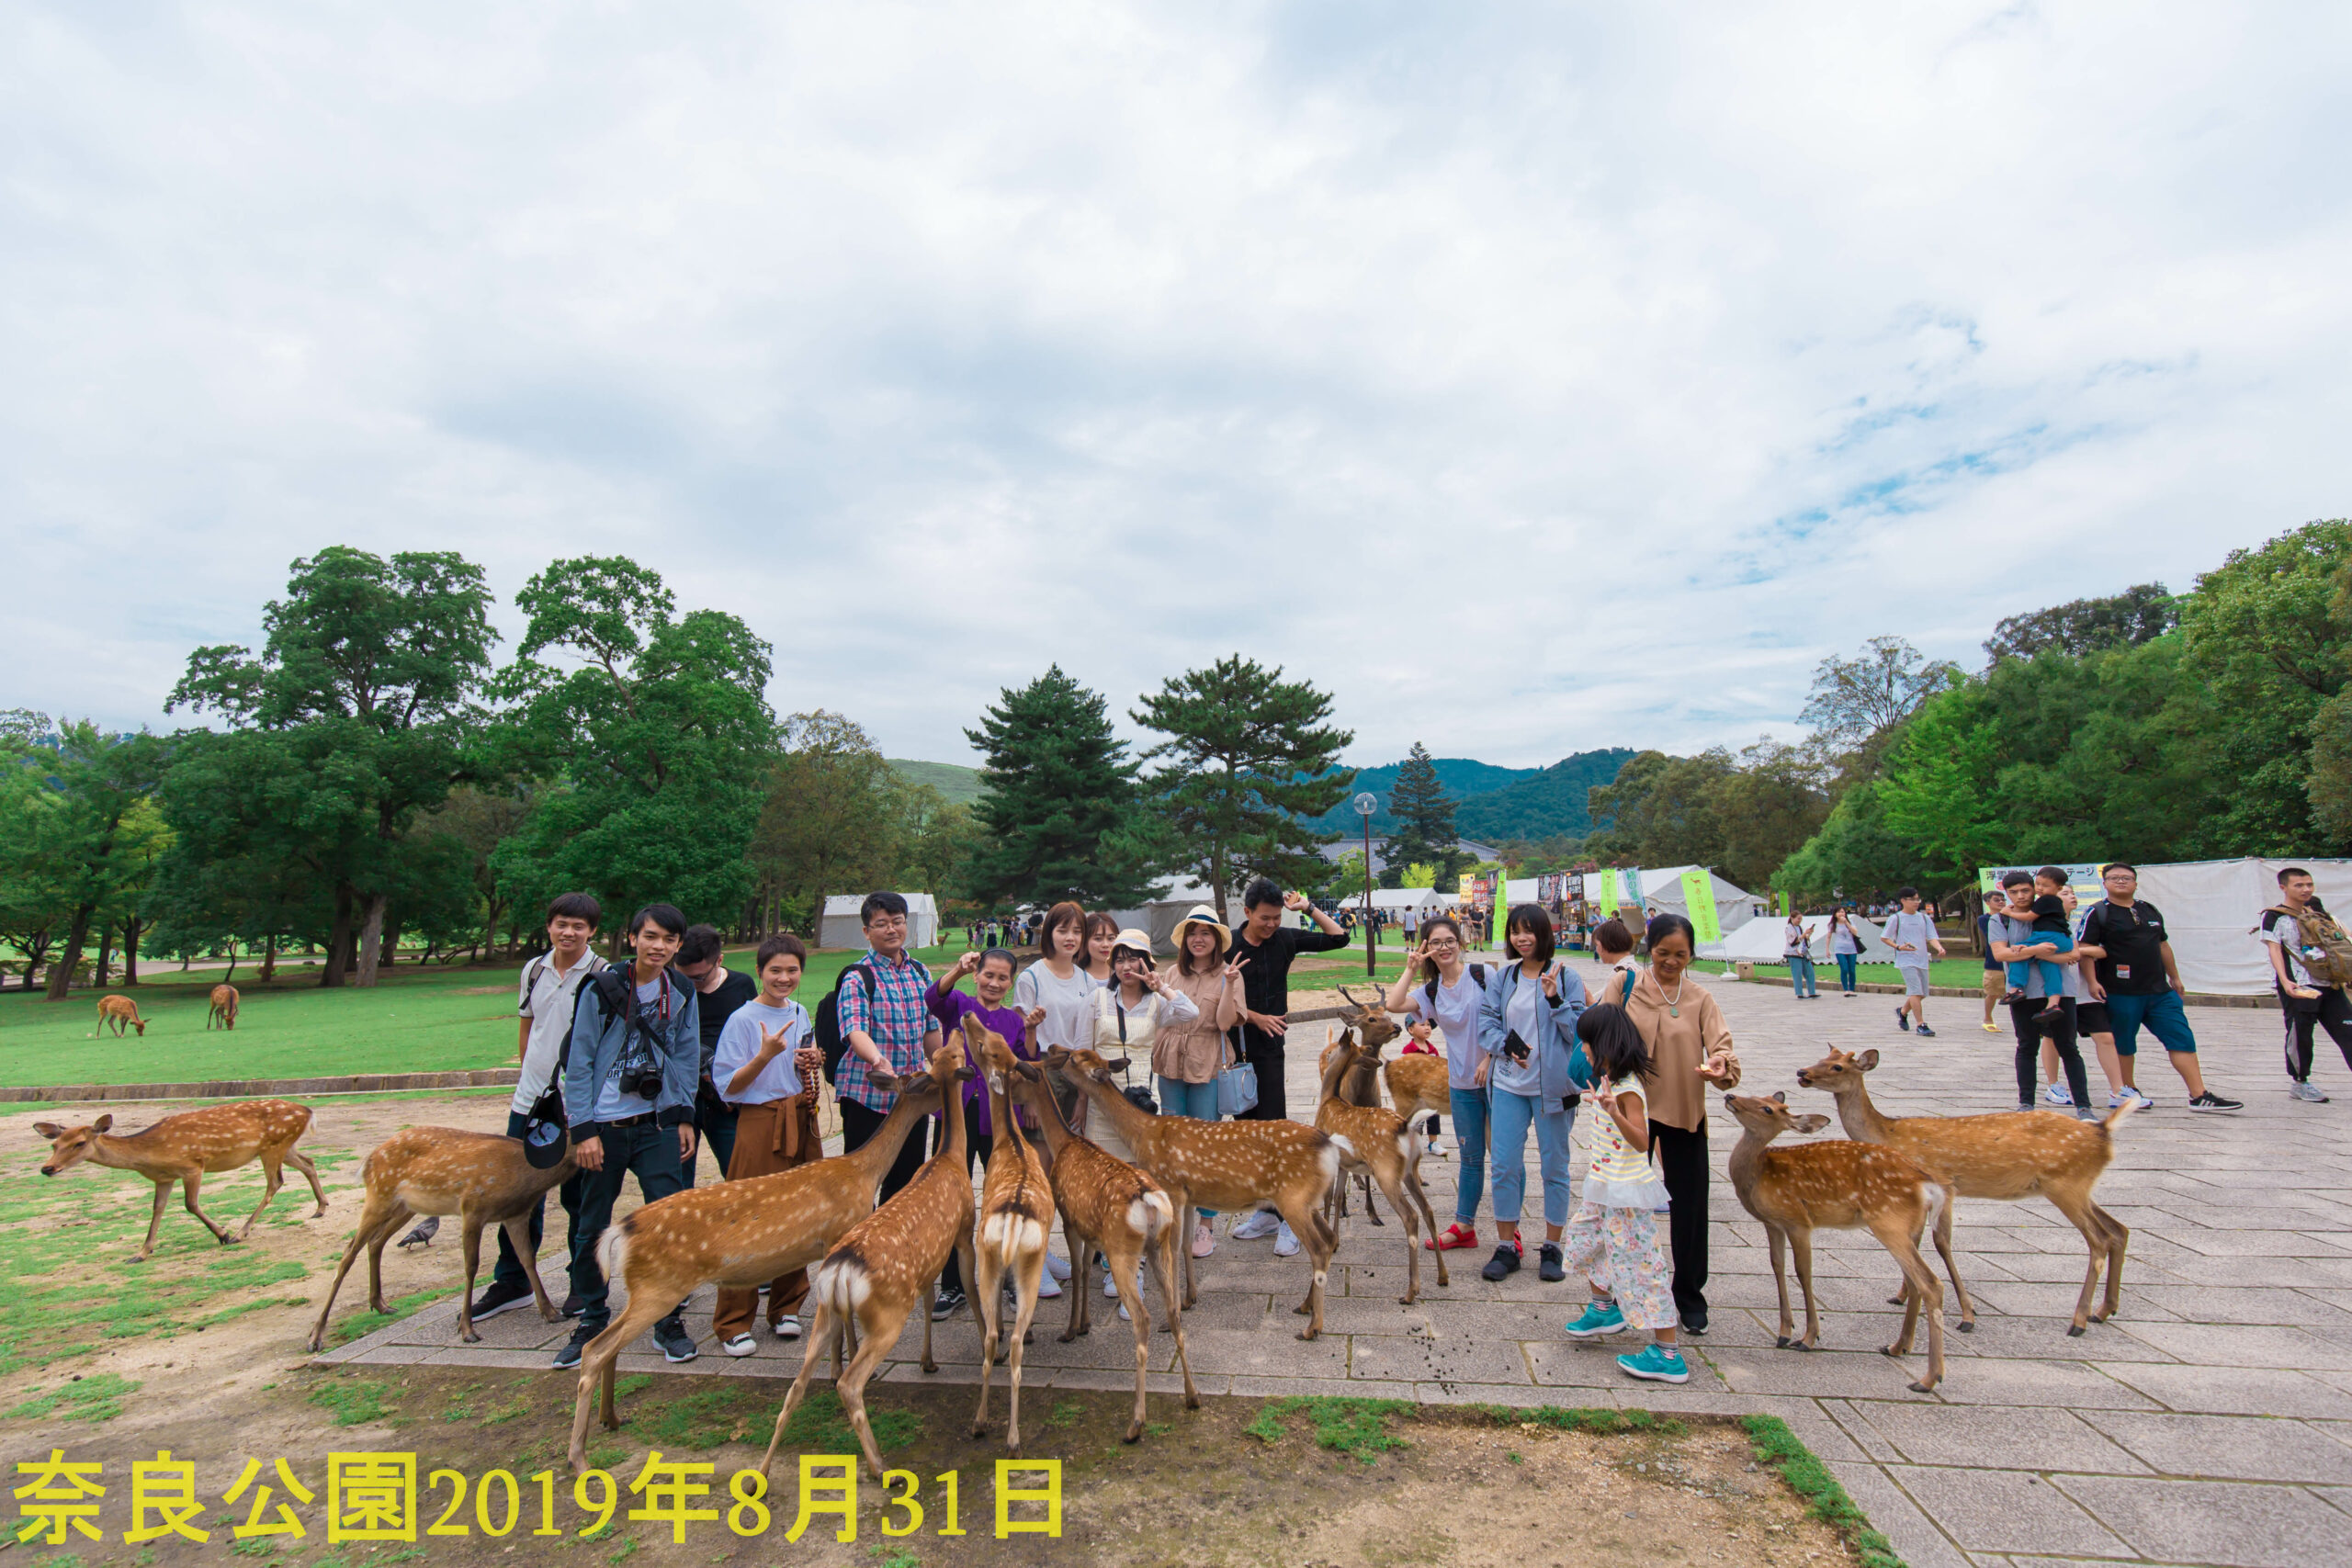 Công viên Nara với hình ảnh thân thiện giữa du khách và h
<figure class=